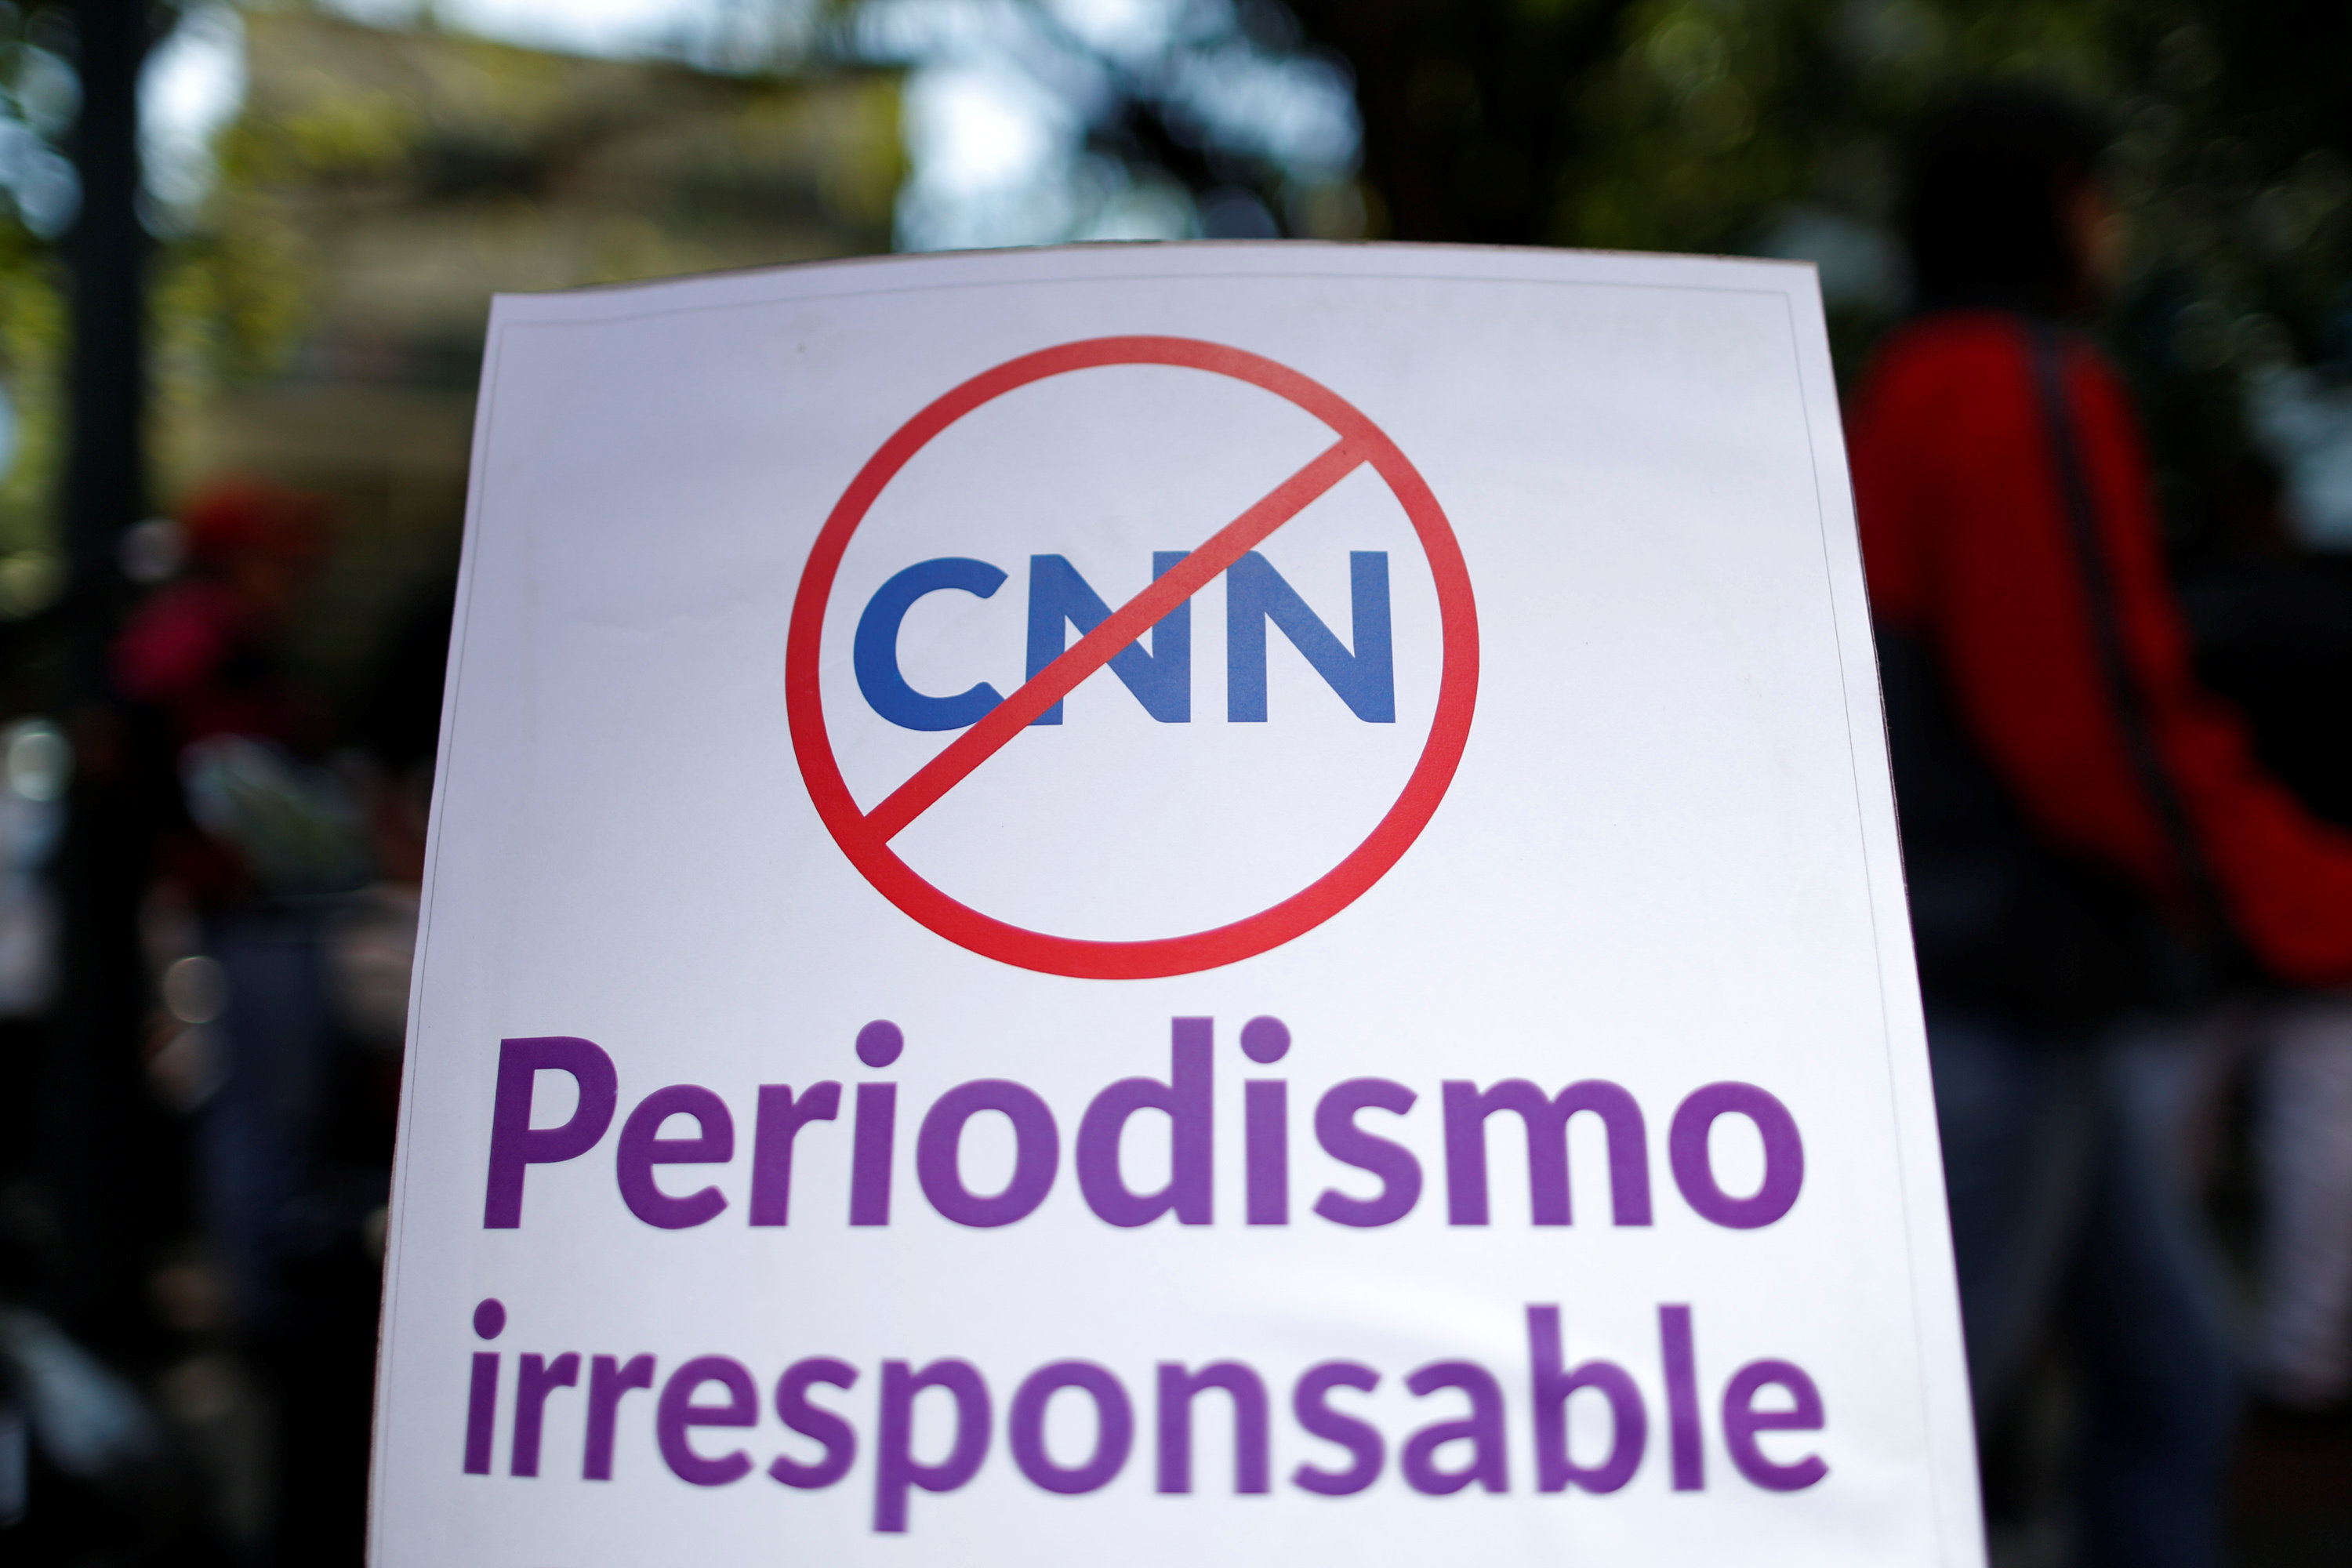 La Comisión Nacional de Telecomunicaciones de Venezuela inició un procedimiento sancionatorio que suspendió las transmisiones de CNN en español por difundir mentiras del país.